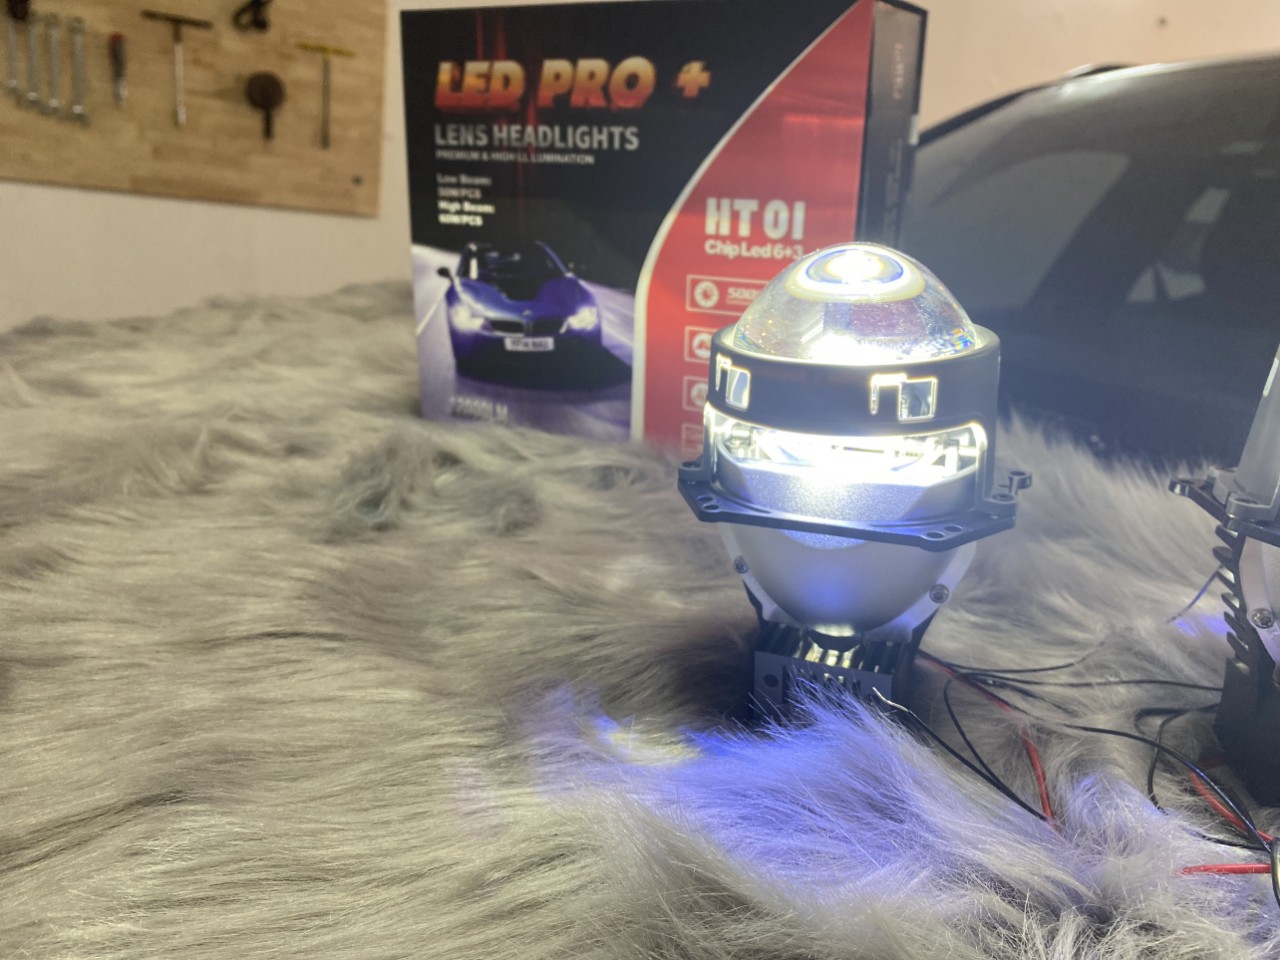 Thi công đèn led pro + cho ô tô